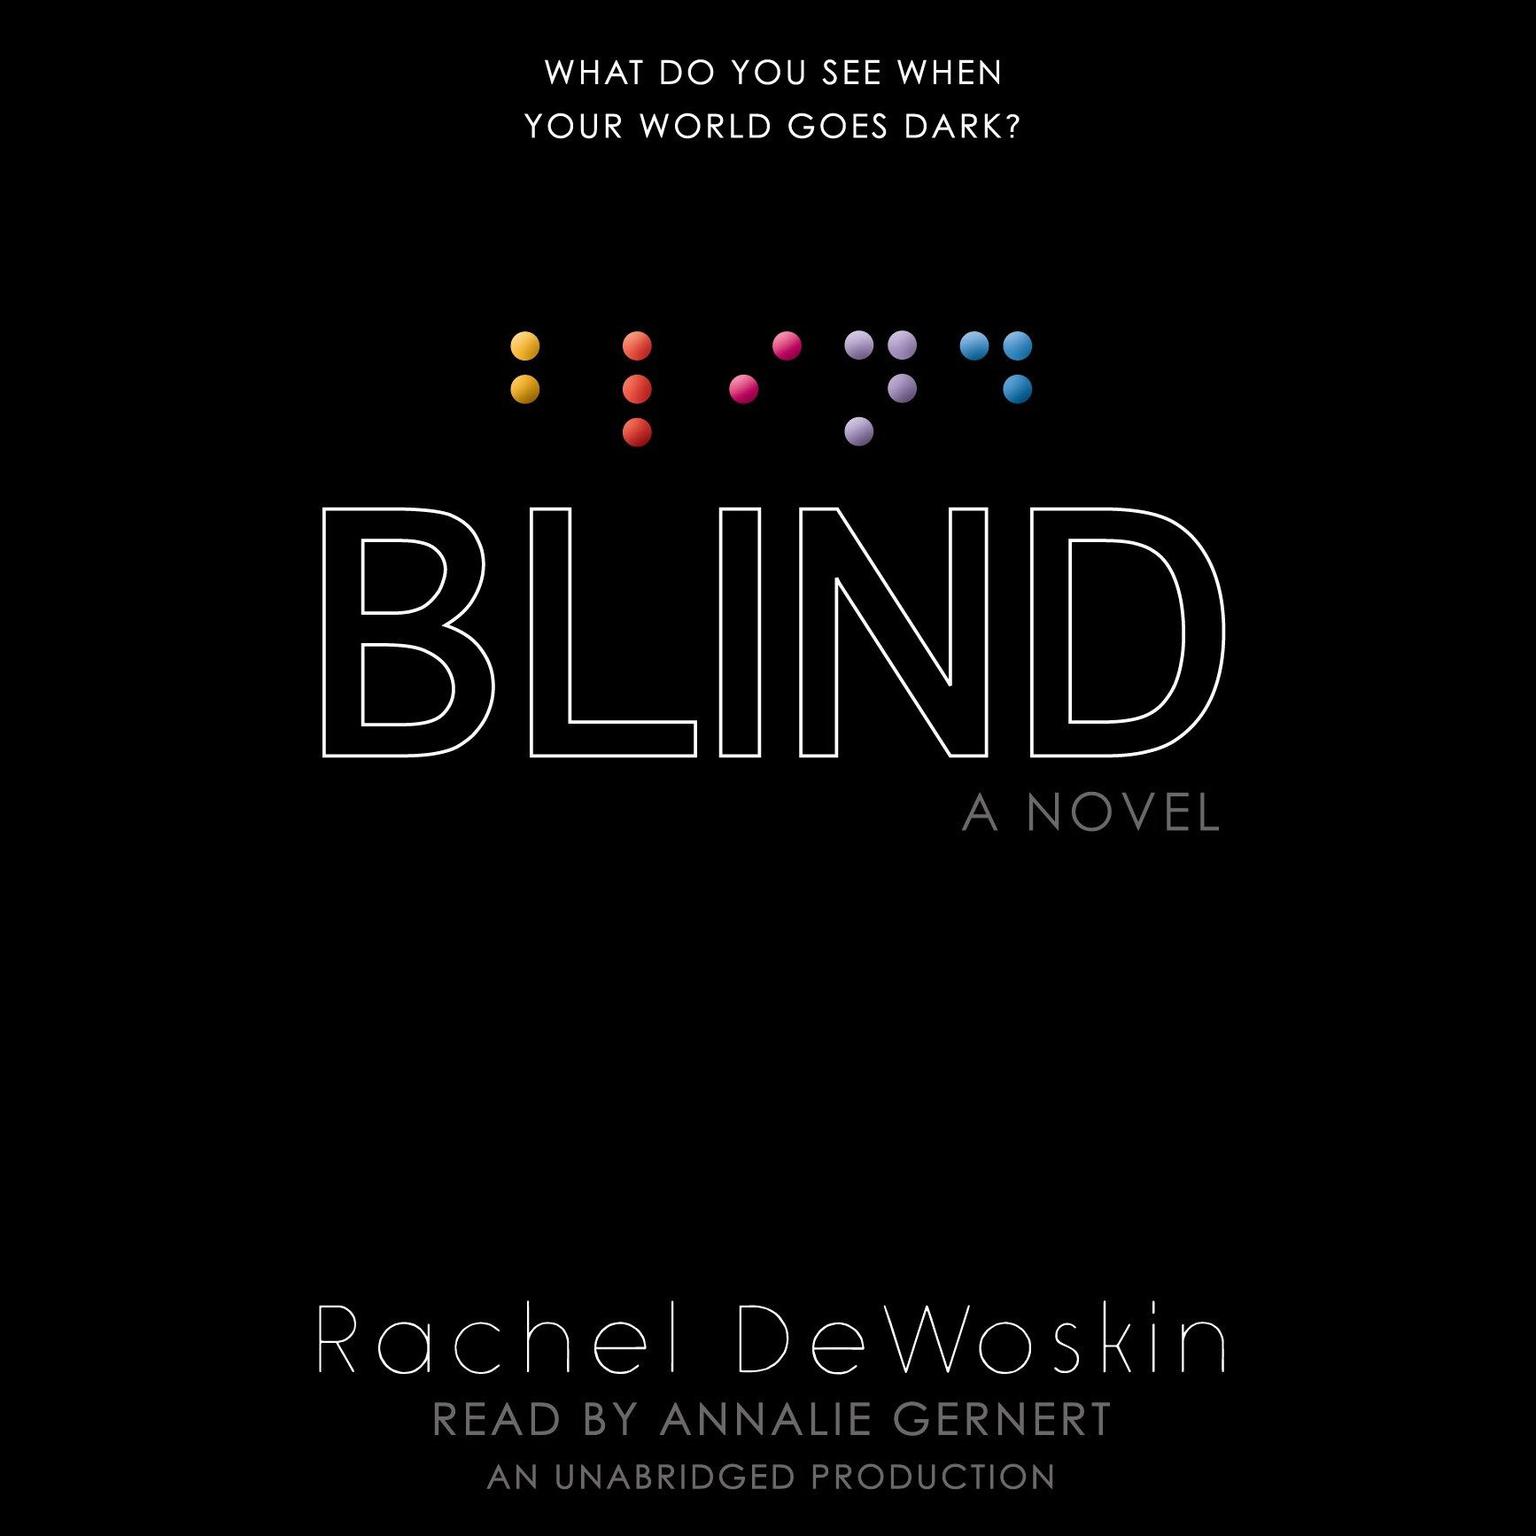 Blind Audiobook, by Rachel DeWoskin